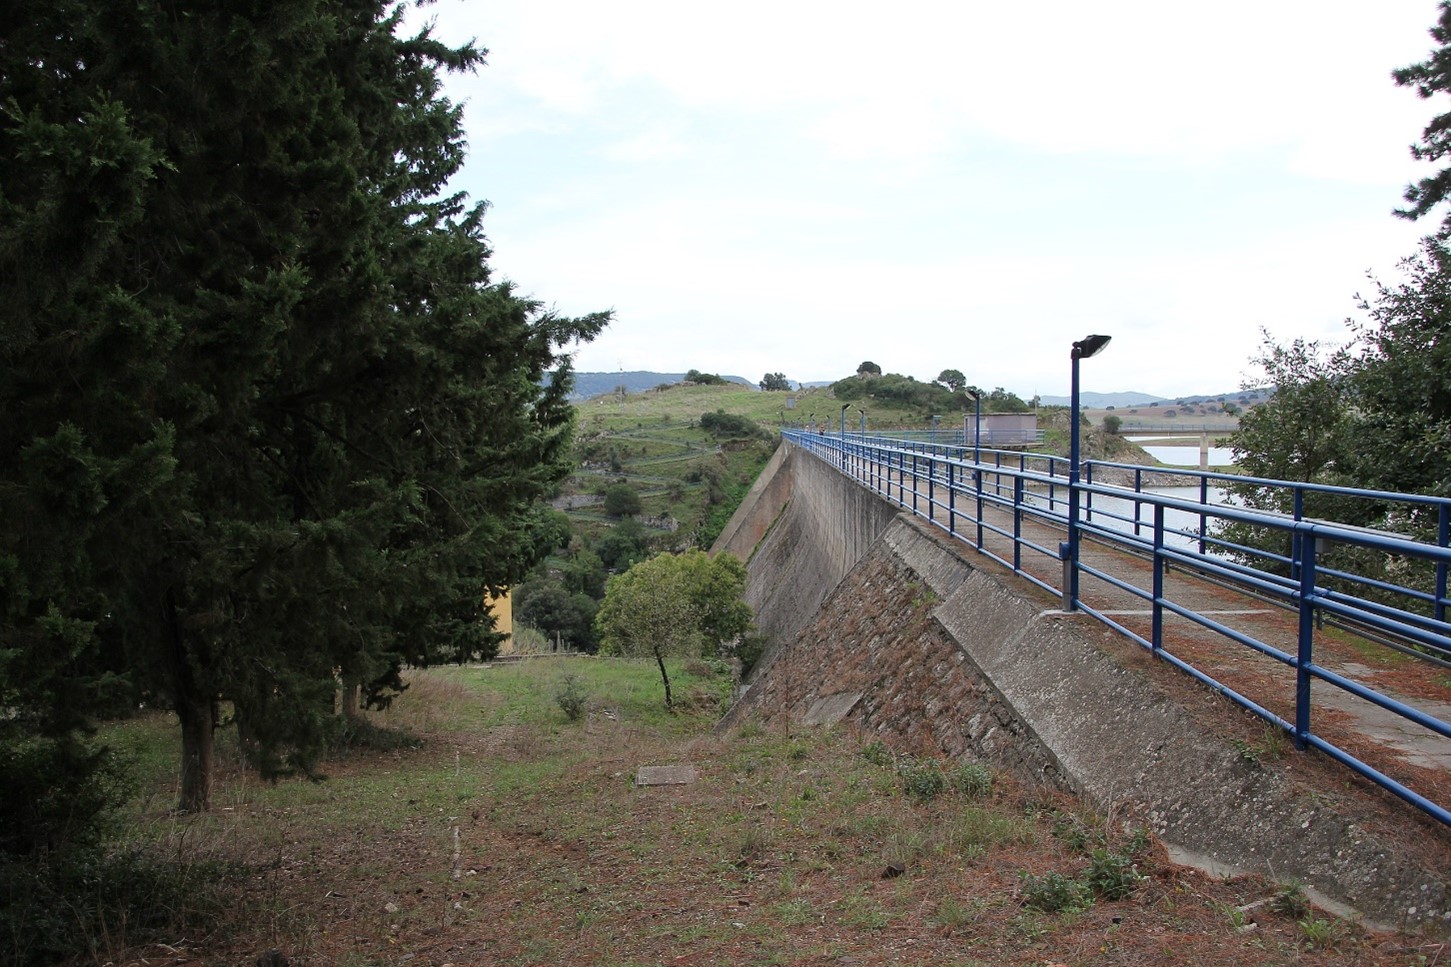 Realizzazione di un impianto mini-idroelettrico a recupero di energia a valle dell’esistente impianto di sollevamento di Monteleone Roccadoria che collega l’invaso dell’Alto Temo con quello del Bidighinzu